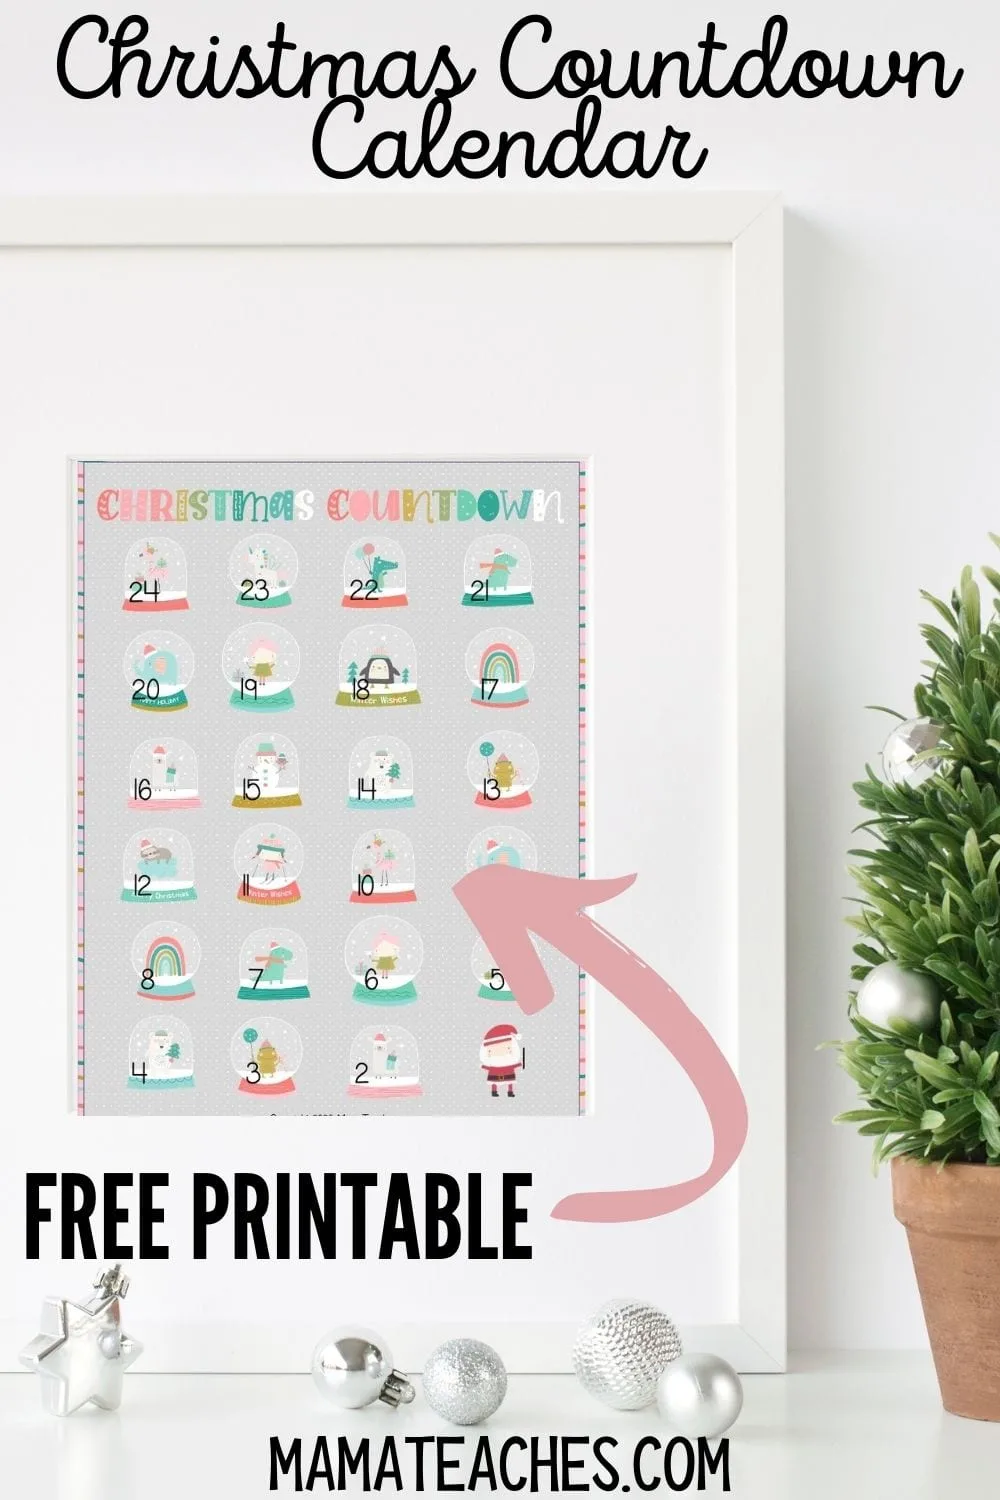 Free Printable Christmas Countdown Calendar for Kids